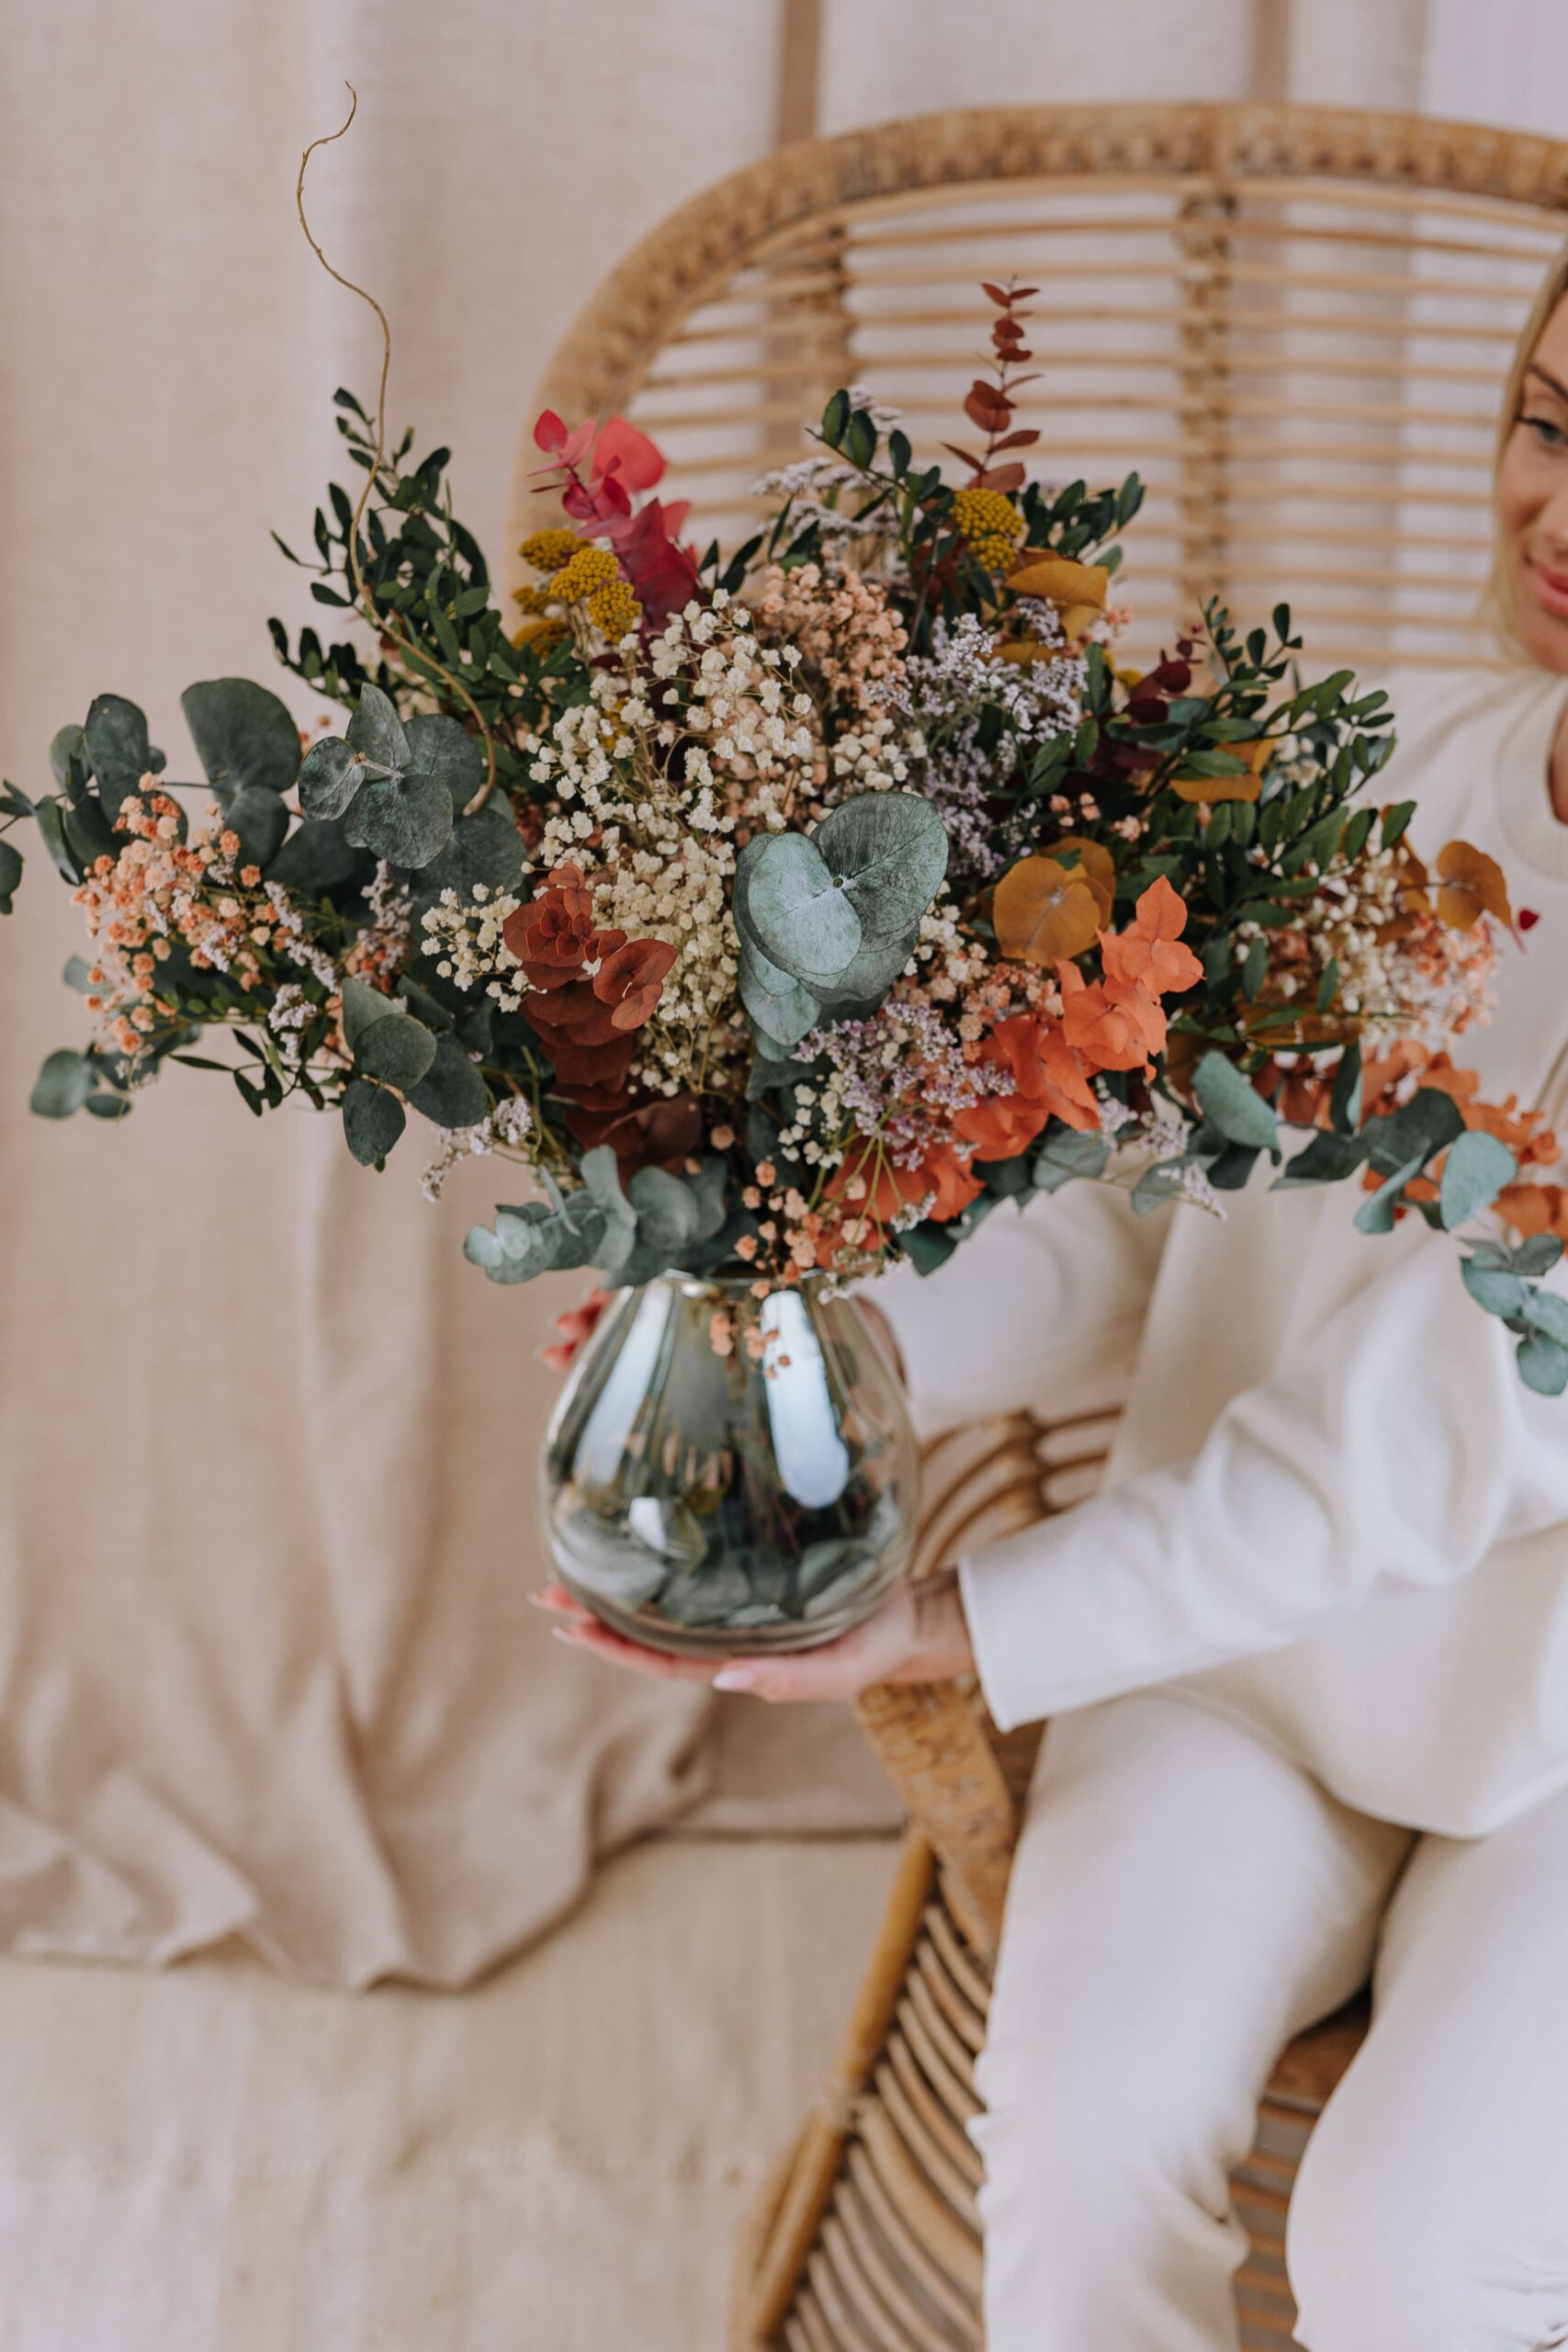 Descubre el regalo perfecto para el Día de la Madre: hermosas flores preservadas que durarán para siempre. Haz clic para encontrar la mejor selección y deleita a tu madre con un regalo único y duradero.